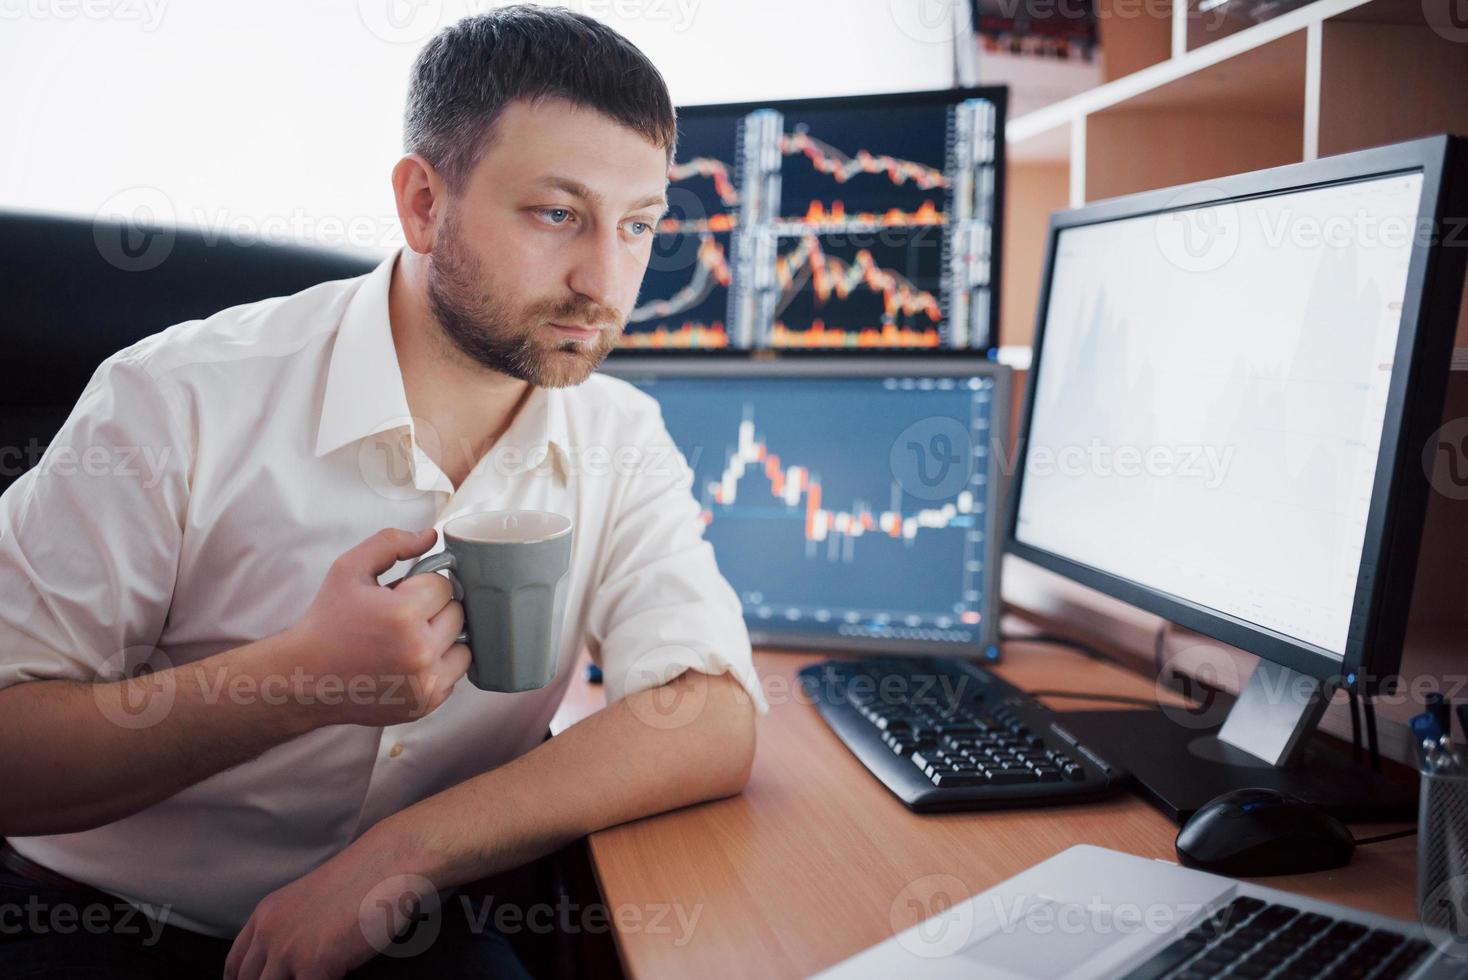 börsmäklare i skjorta arbetar i ett övervakningsrum med skärmar. börshandel forex finans grafiskt koncept. affärsmän som handlar aktier online foto